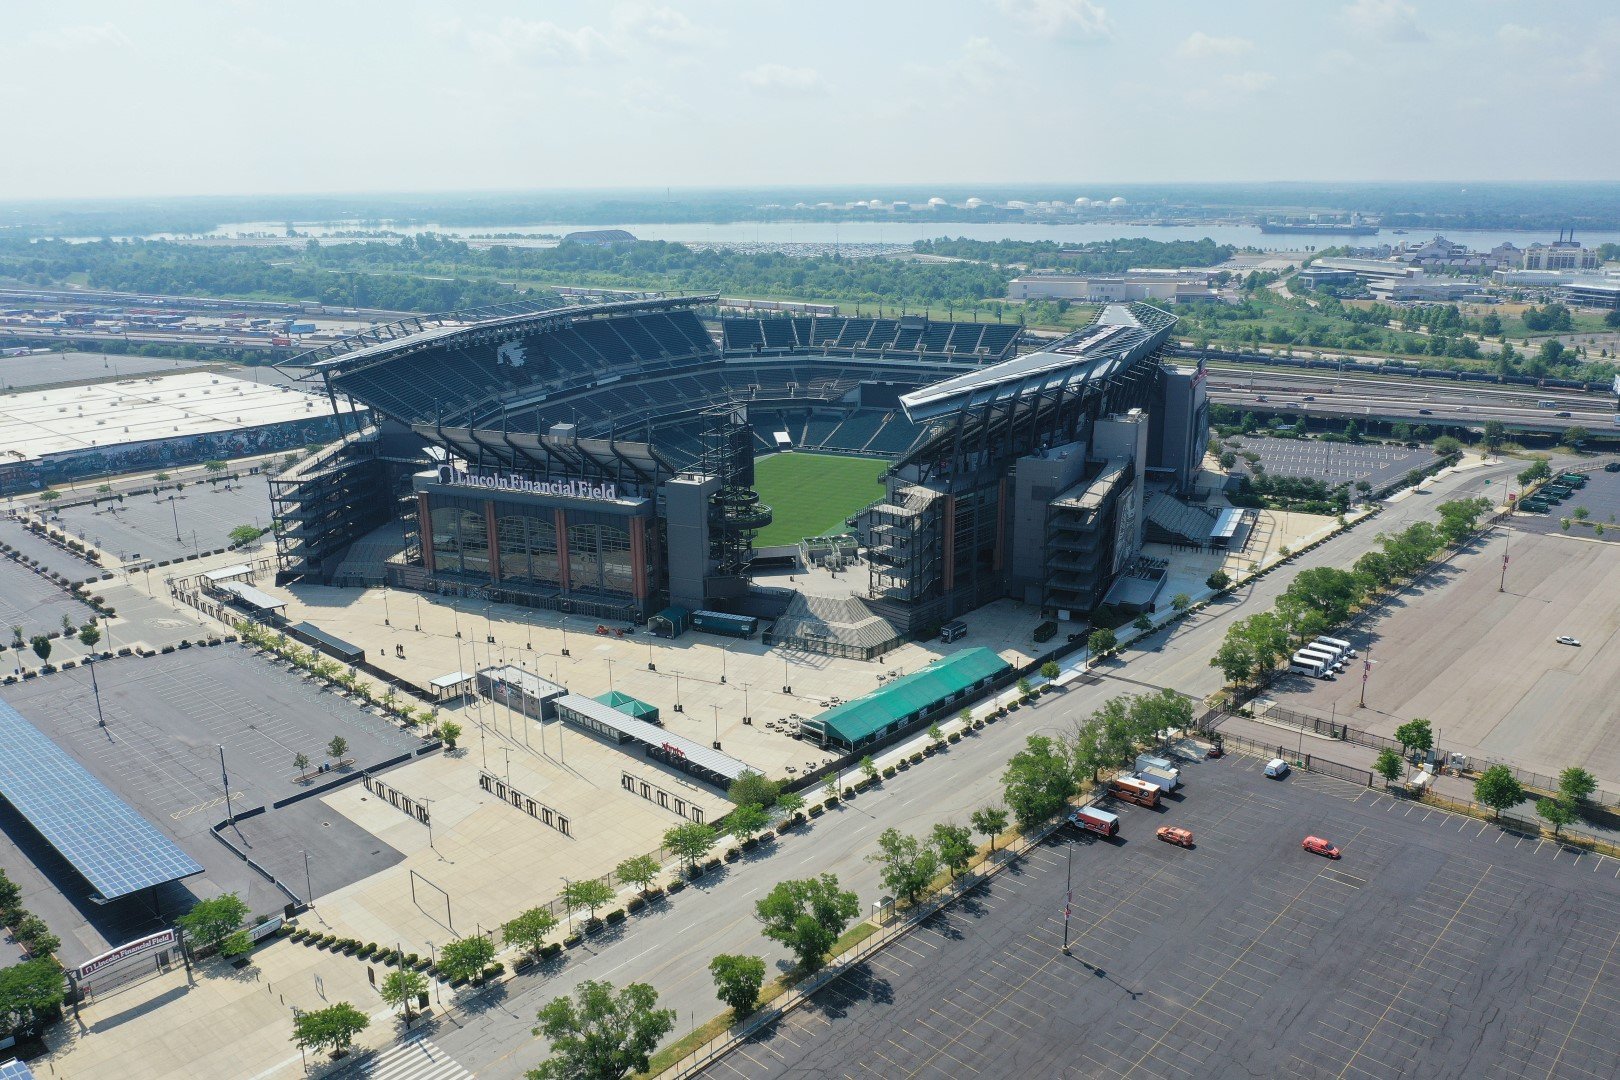 Стадионът във Филаделфия с име "Lincoln Financial Field" ще стане за световното "Филаделфия Стейдиъм", за да влезе в критериите на ФИФА. Това е градът на Роки, но и на Филаделфия Ийгълс - тима по американски футбол. И изобщо - луд по спорта град.